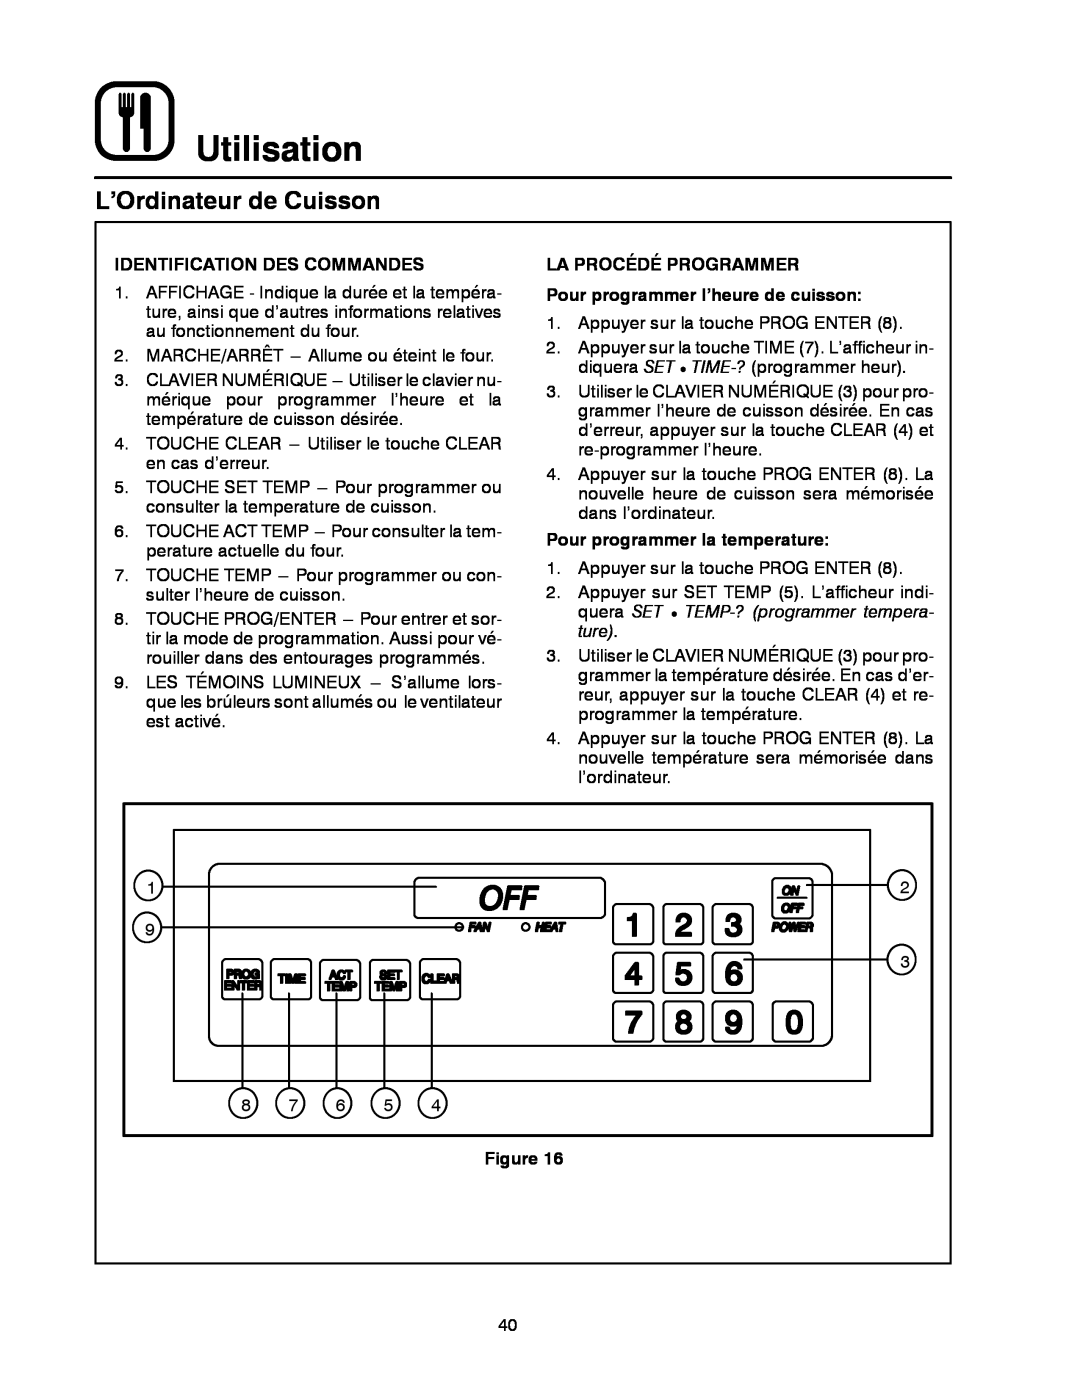 Blodgett MT3855G-G L’Ordinateur de Cuisson, Utilisation, Identification Des Commandes, Pour programmer la temperature 